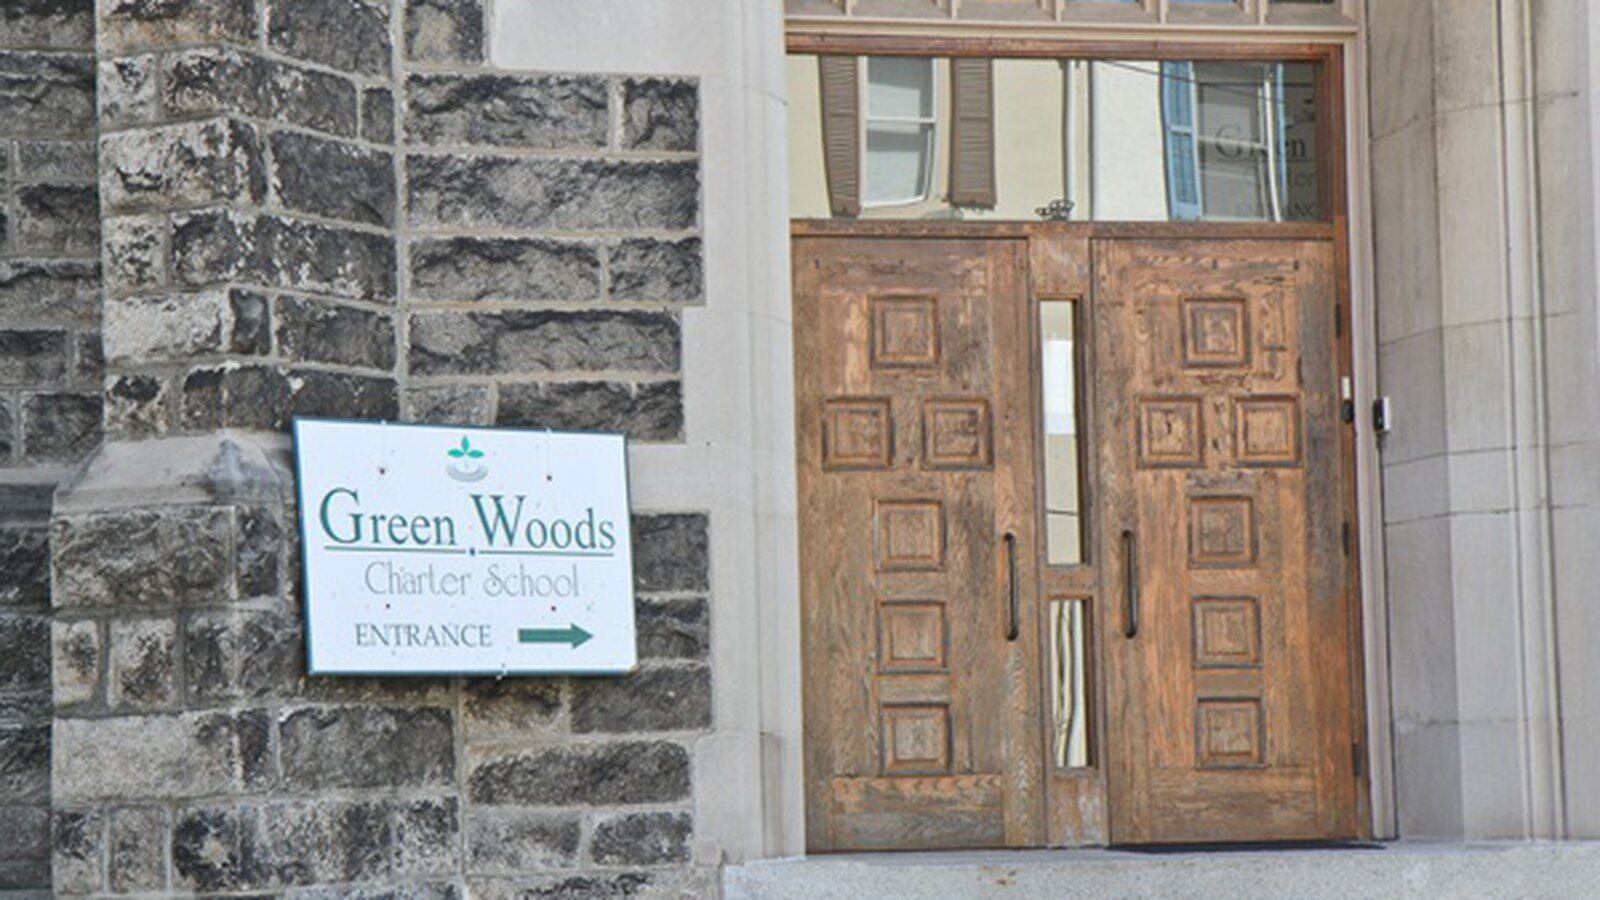 Exterior of Green Woods Charter School.